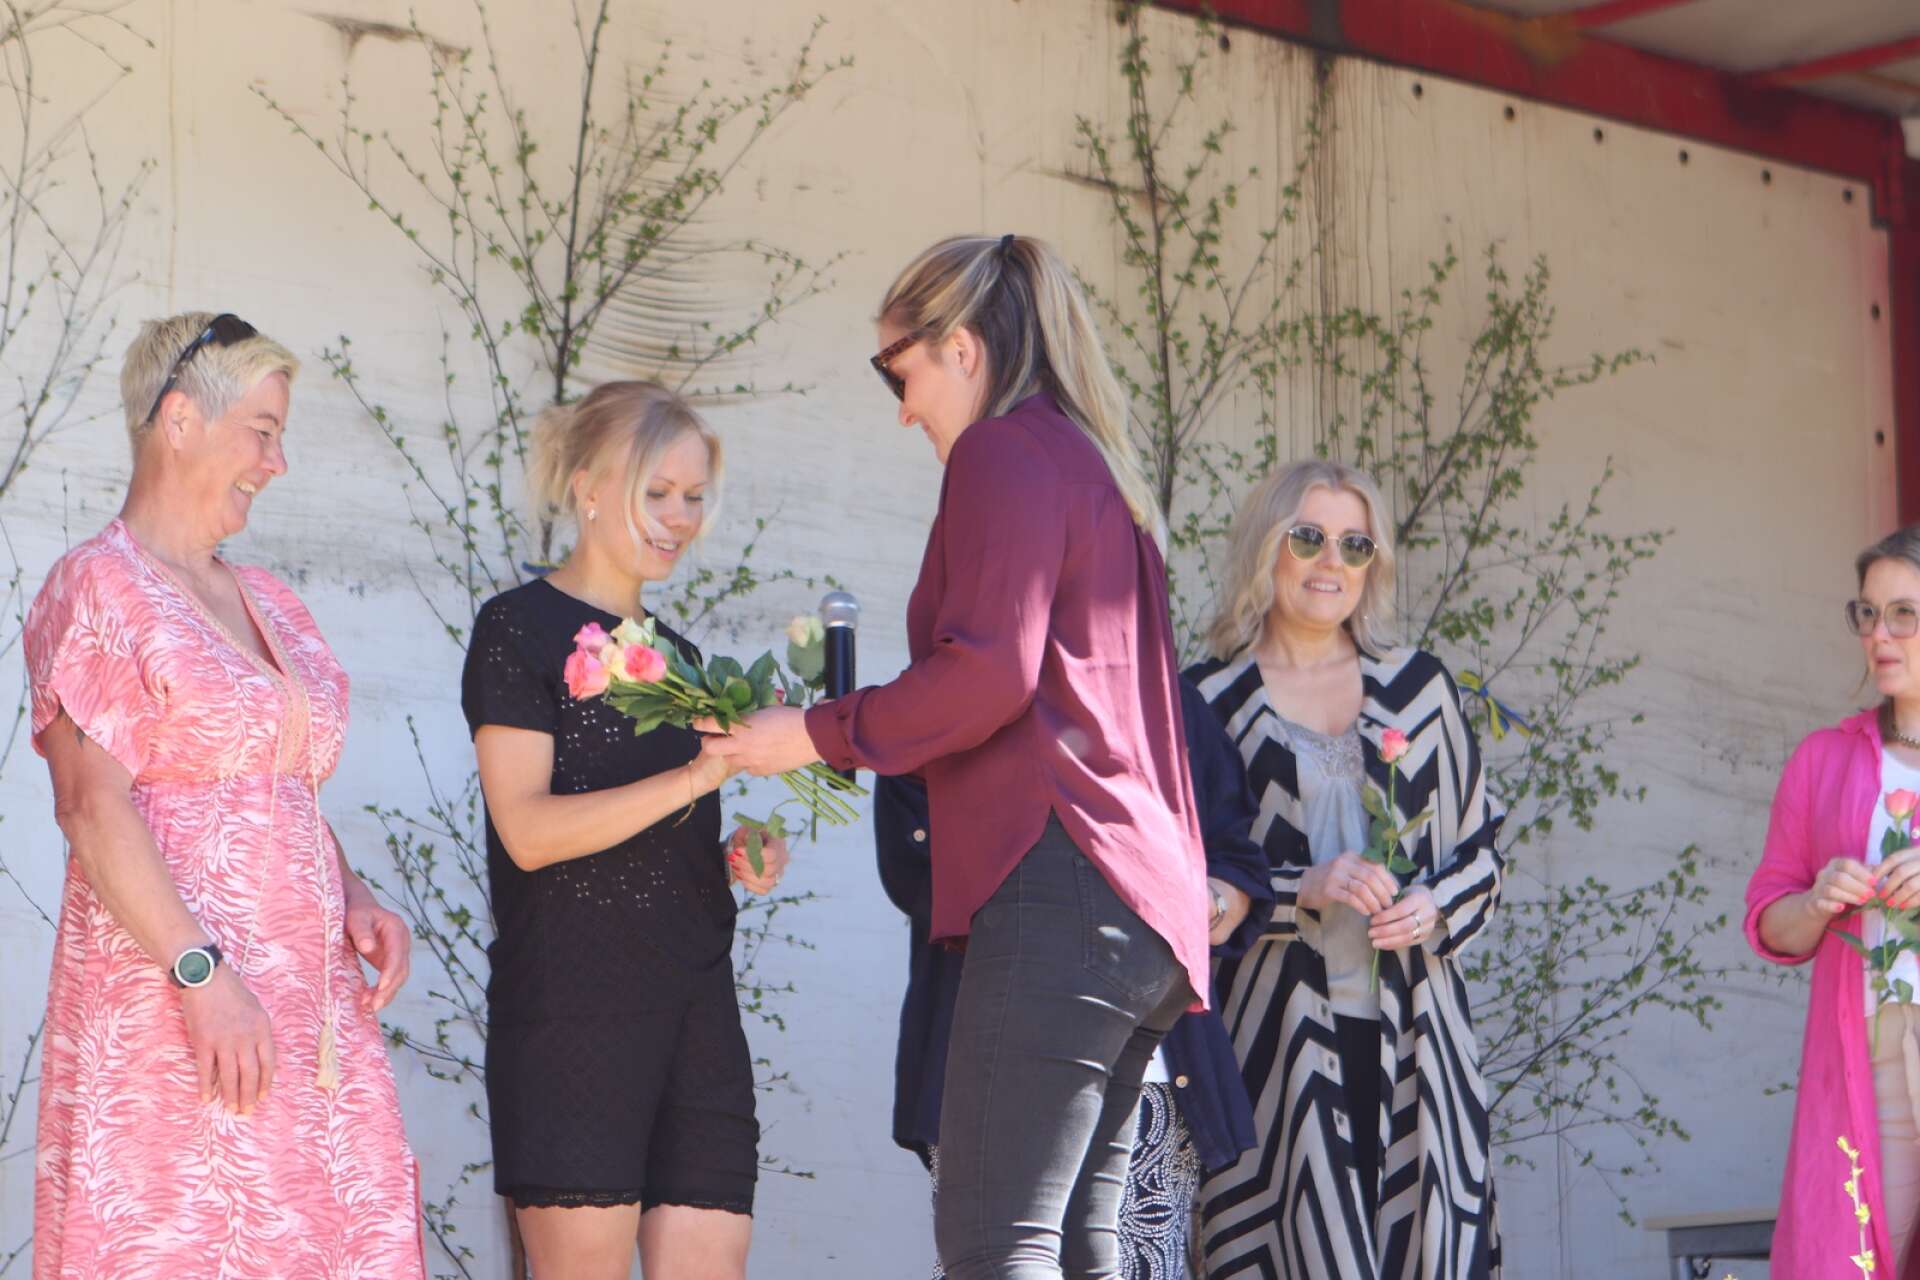 Dee-Annas klädbutik gästade Lesjöforsdagen med en modevisning. De lokala modellerna tackades med varsin blomma på scenen. Här delar arrangören Kristin Andersson ut en ros till Julia Andersson.